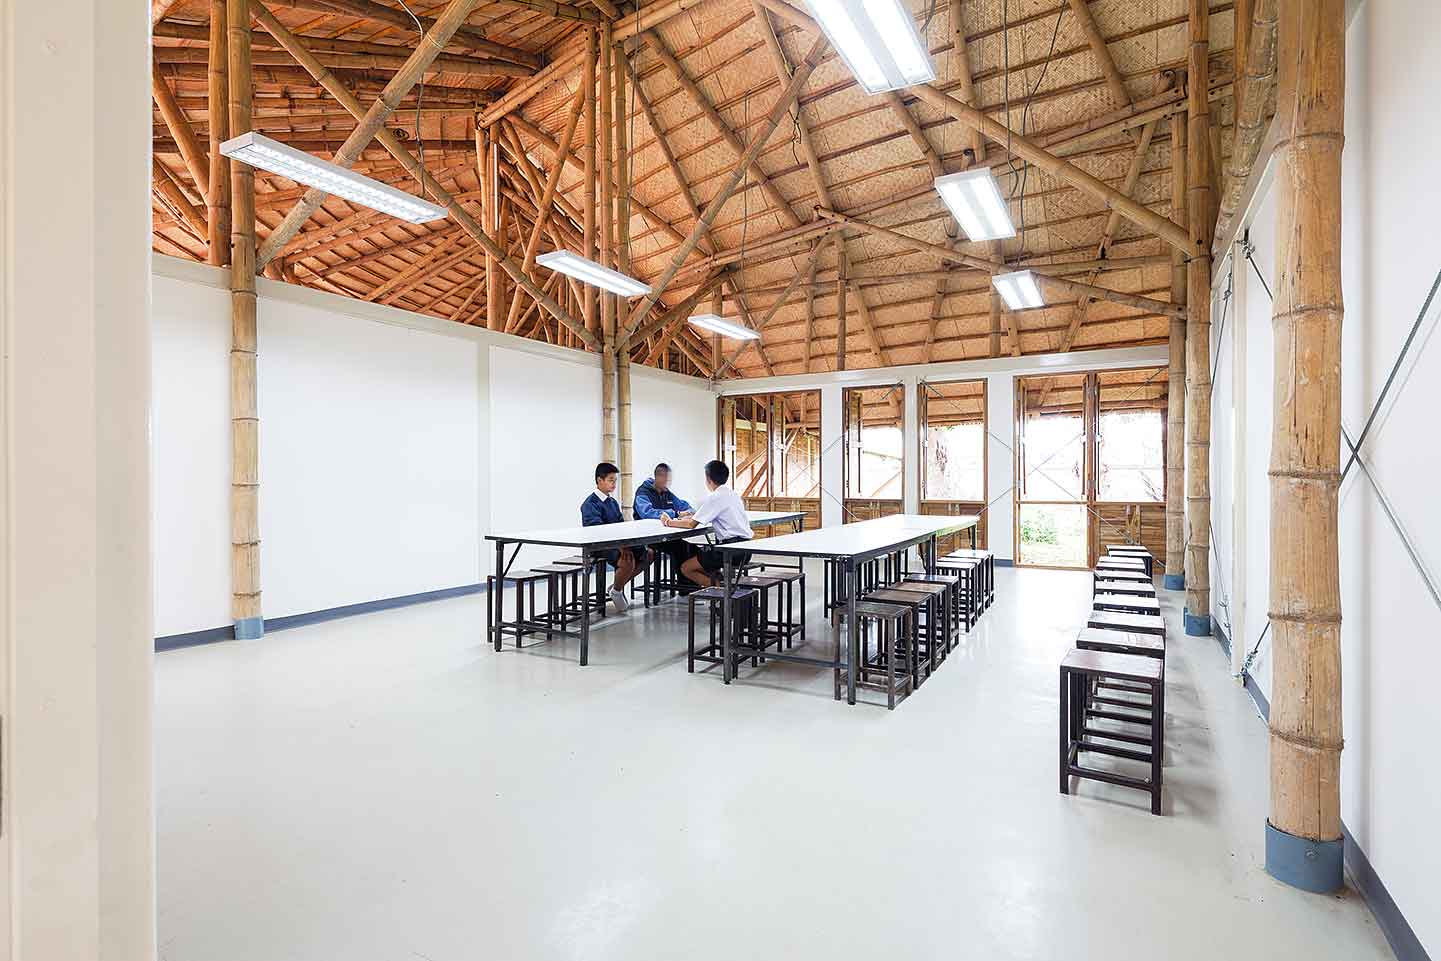 ห้องเรียนที่เปิดเพดานโล่ง เห็นโครงสร้างไม้ไผ่ได้อย่างชัดเจน บานหน้าต่างสามารถเปิดออกเป็นประตูได้ ตามความตั้งใจของผู้ออกแบบที่อยากให้พื้นที่ภายนอกและภายในเชื่อมถึงกัน